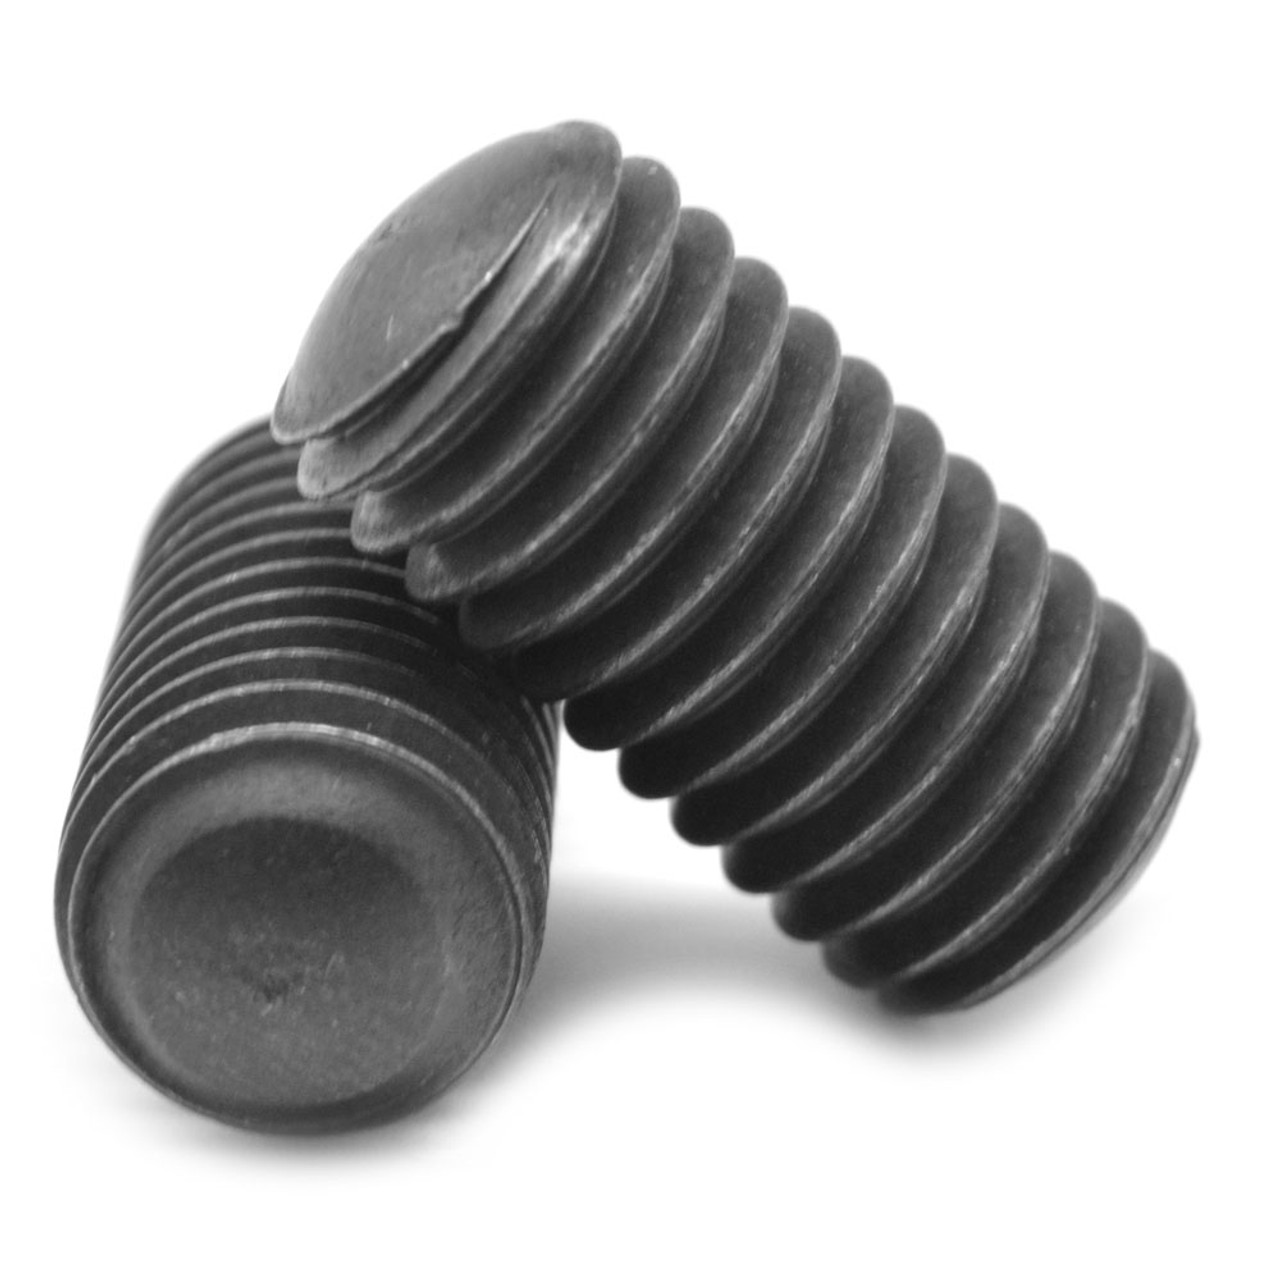 #5-40 x 1/8" Coarse Thread Socket Set Screw Oval Point Alloy Steel Black Oxide